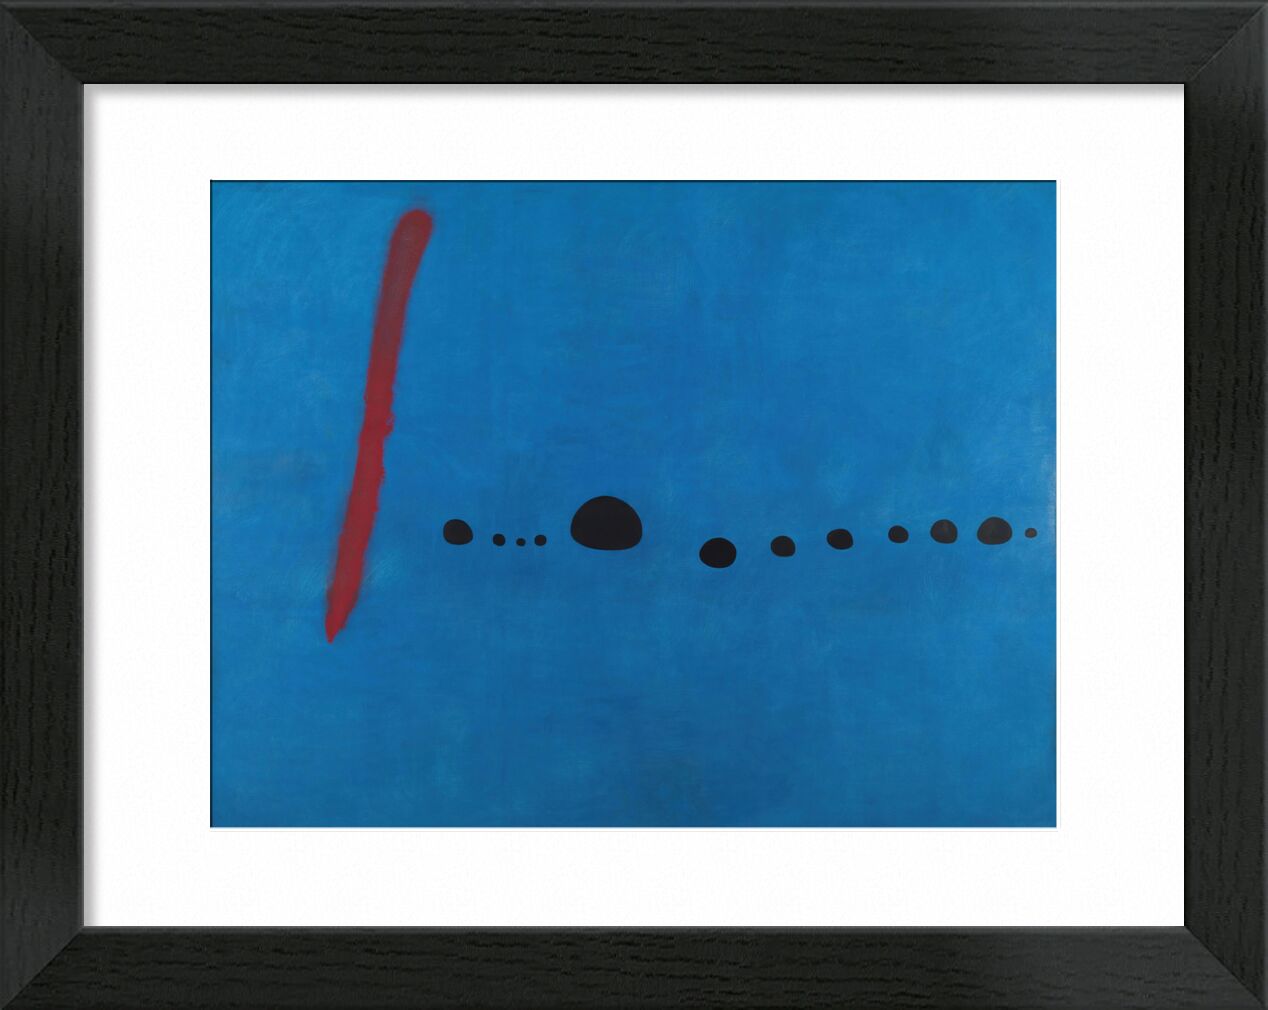 Blue II - Joan Miró desde Bellas artes, Prodi Art, pintura, puntos, rasgos, rojo, infinito, abstracto, dibujo, azul, Joan Miró